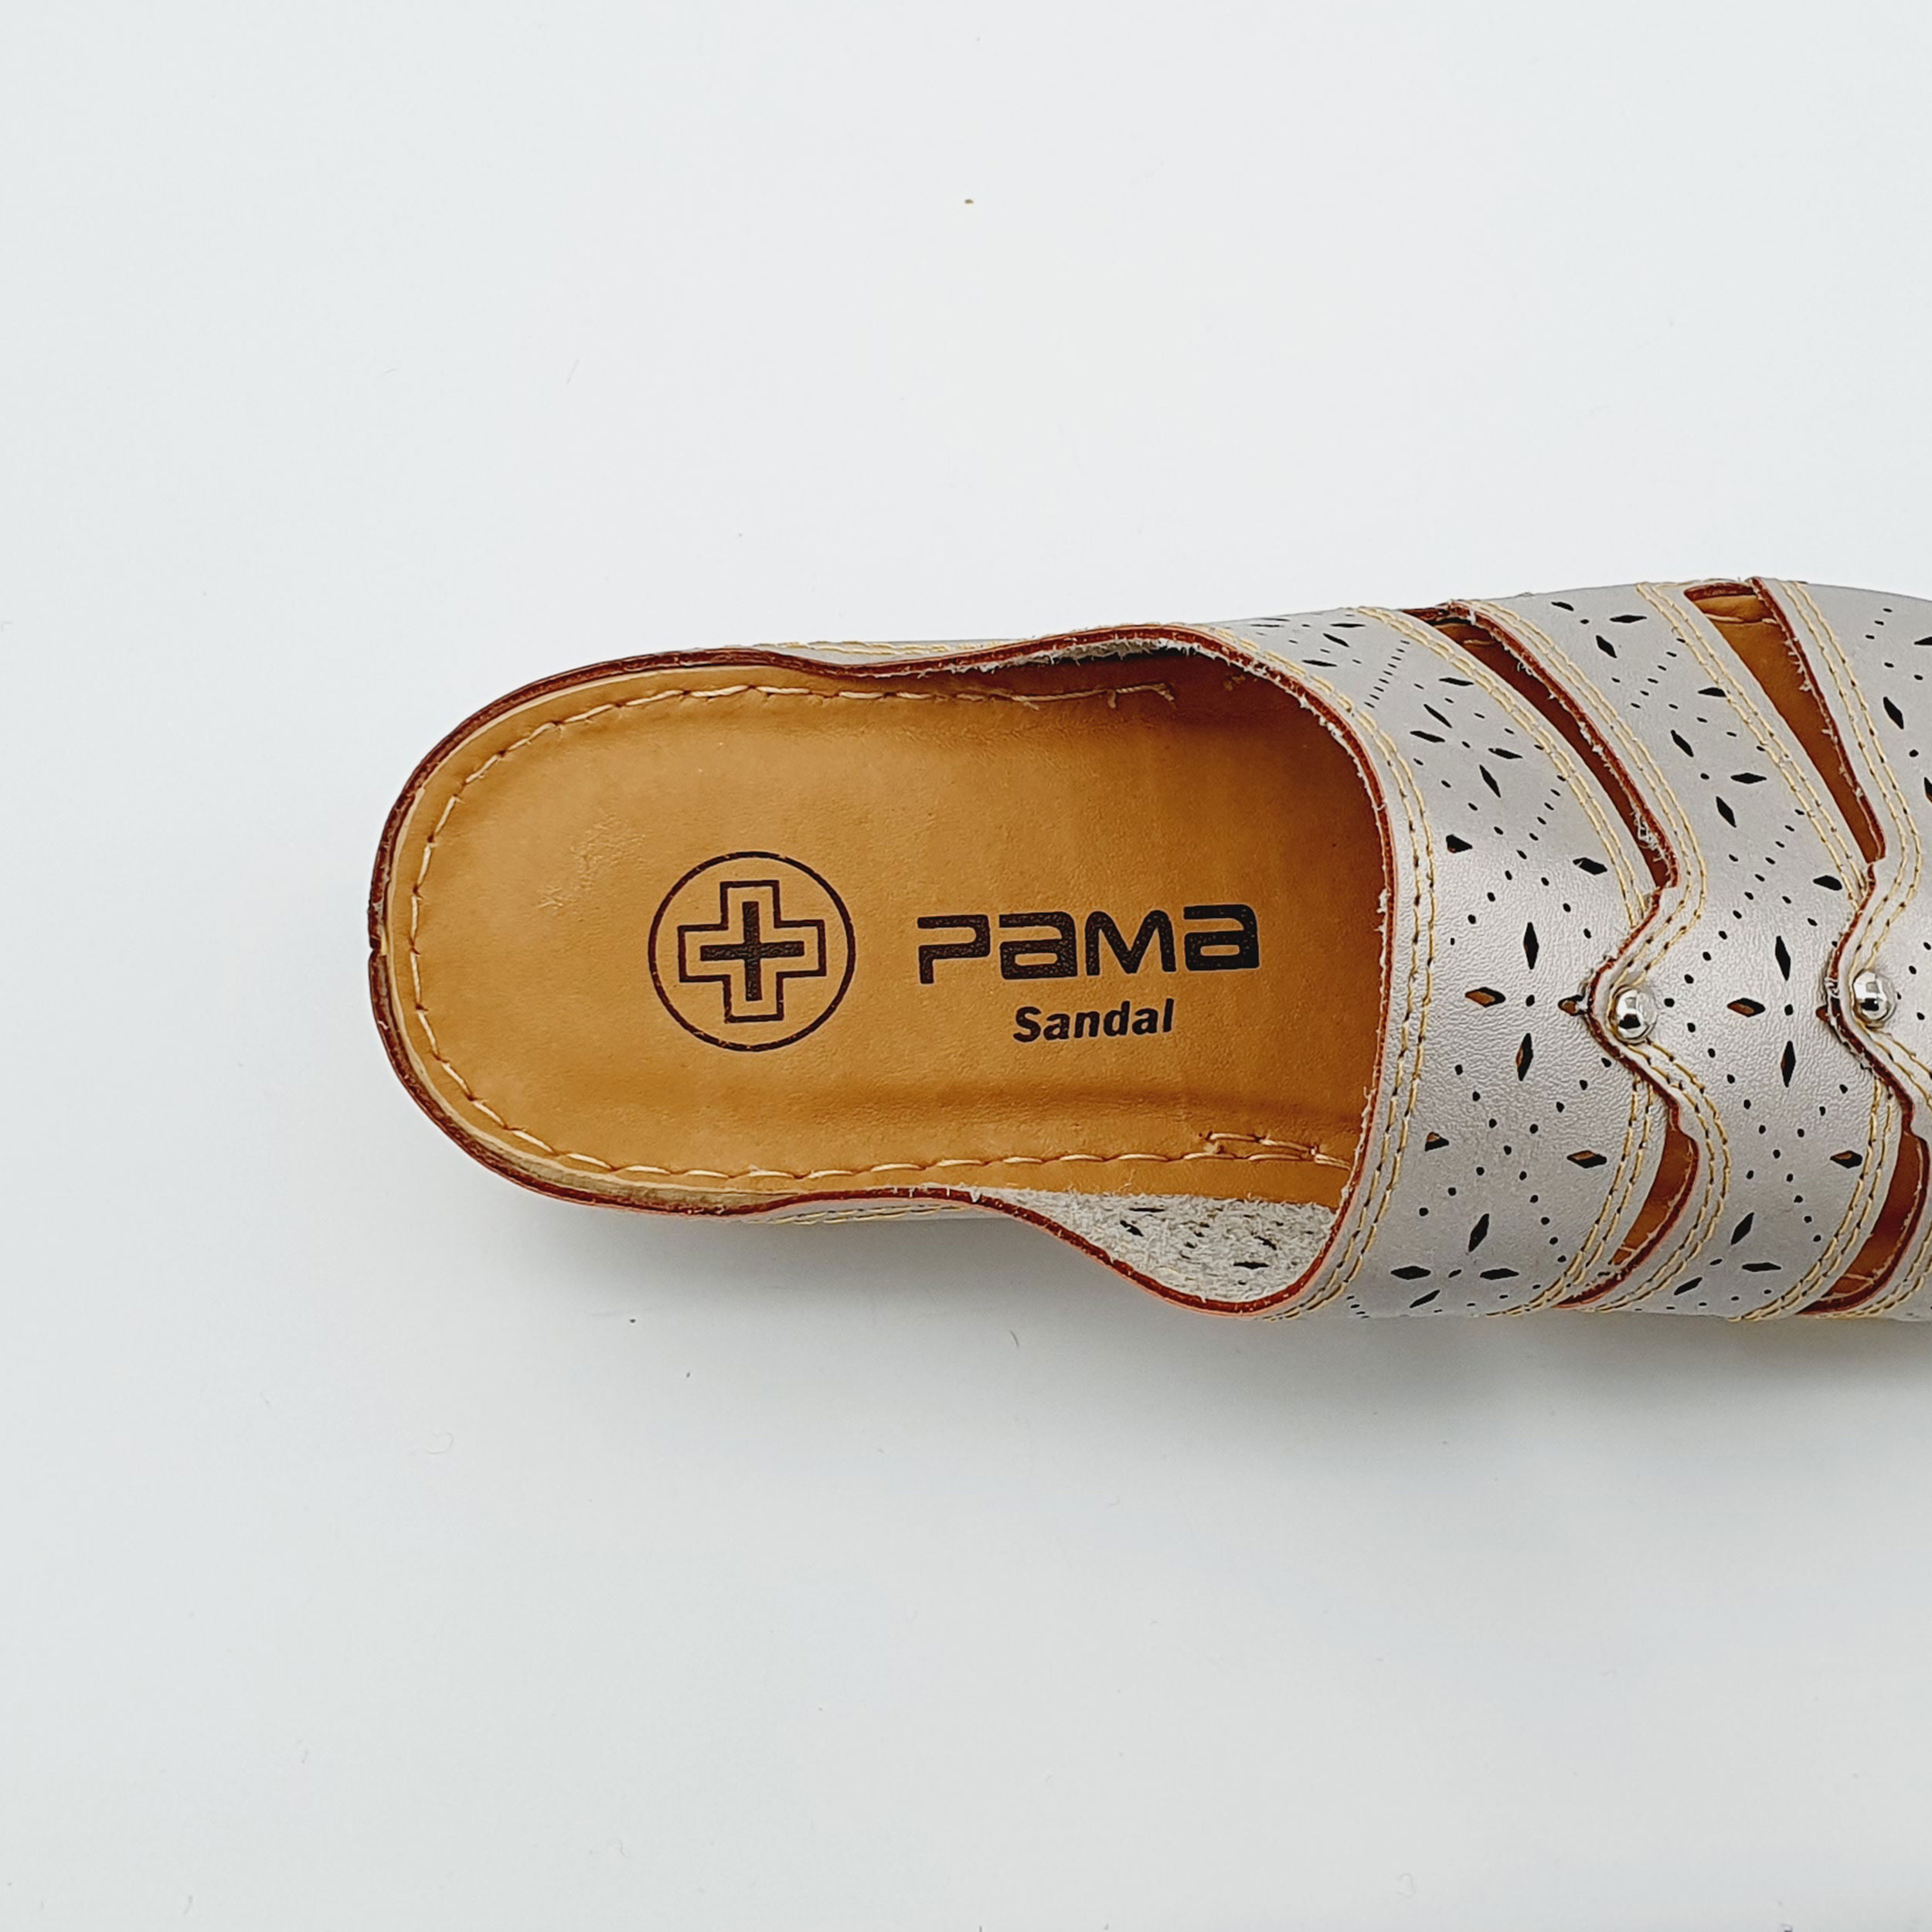 دمپایی زنانه پاما مدل دیان کد G1684 -  - 7